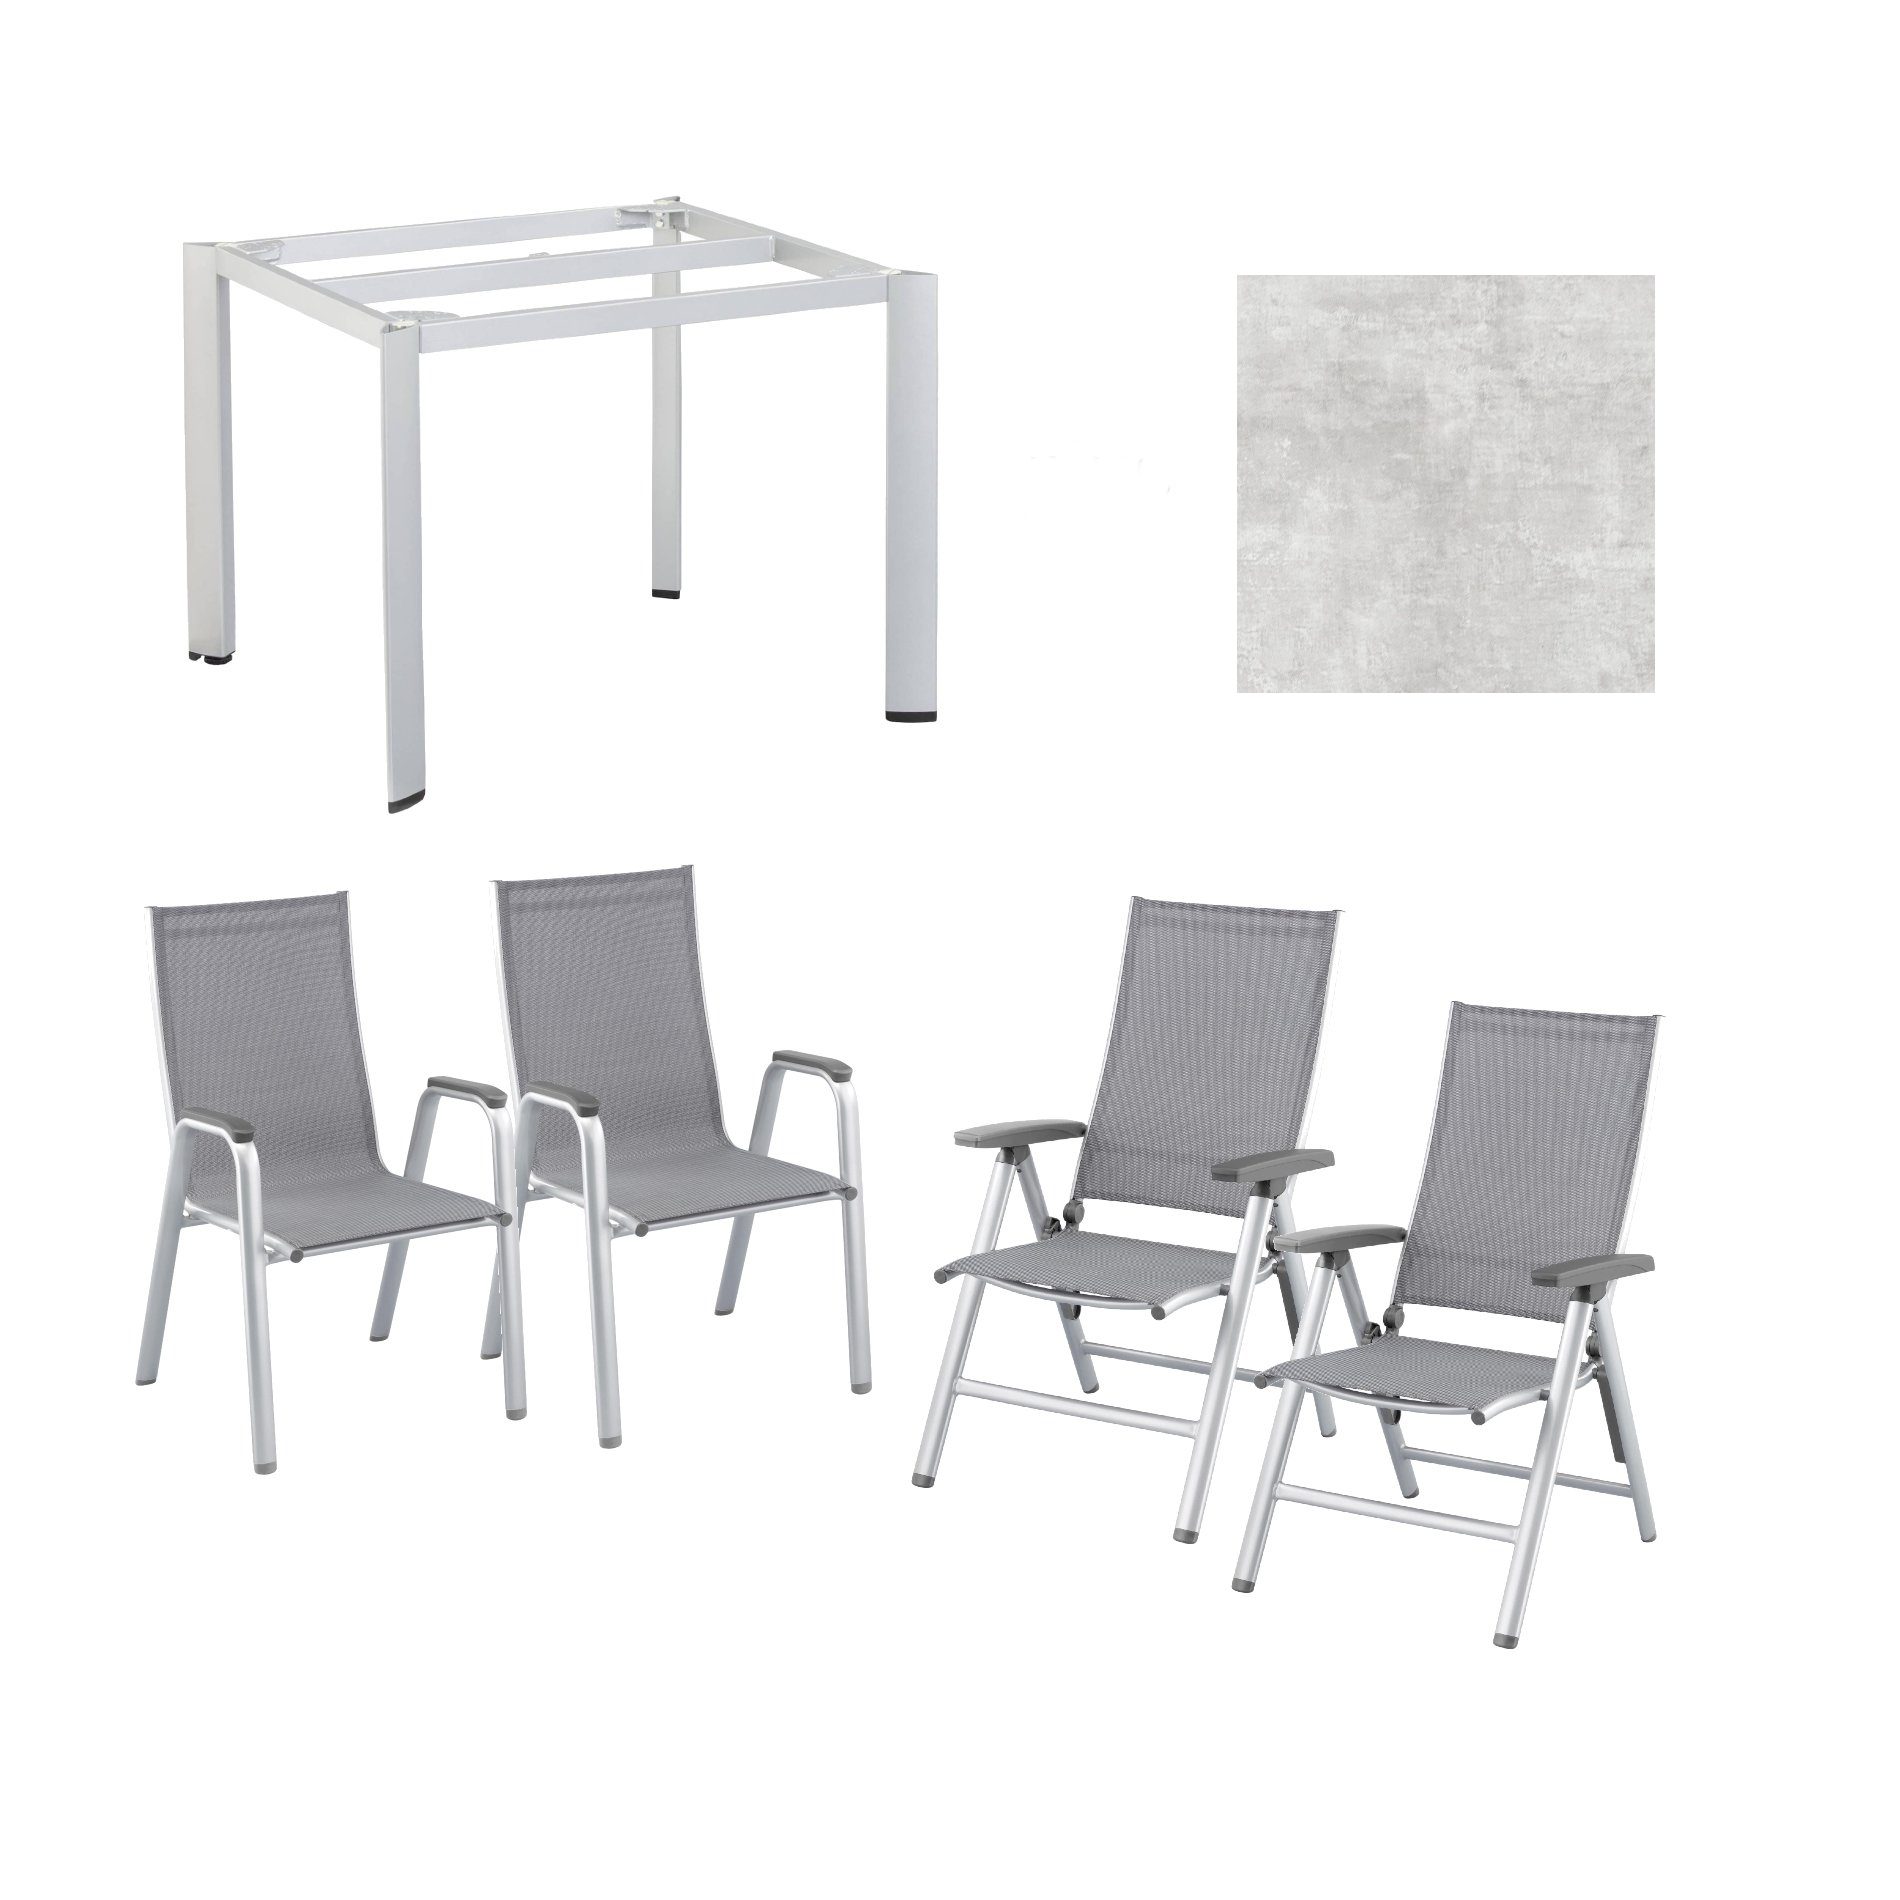 Kettler Gartenmöbel-Set mit "Cirrus" Klapp- und Stapelsessel und "Edge" Gartentisch, Gestelle Aluminium silber, Sitz Textilgewebe anthrazit-grau, Tischplatte HPL hellgrau meliert